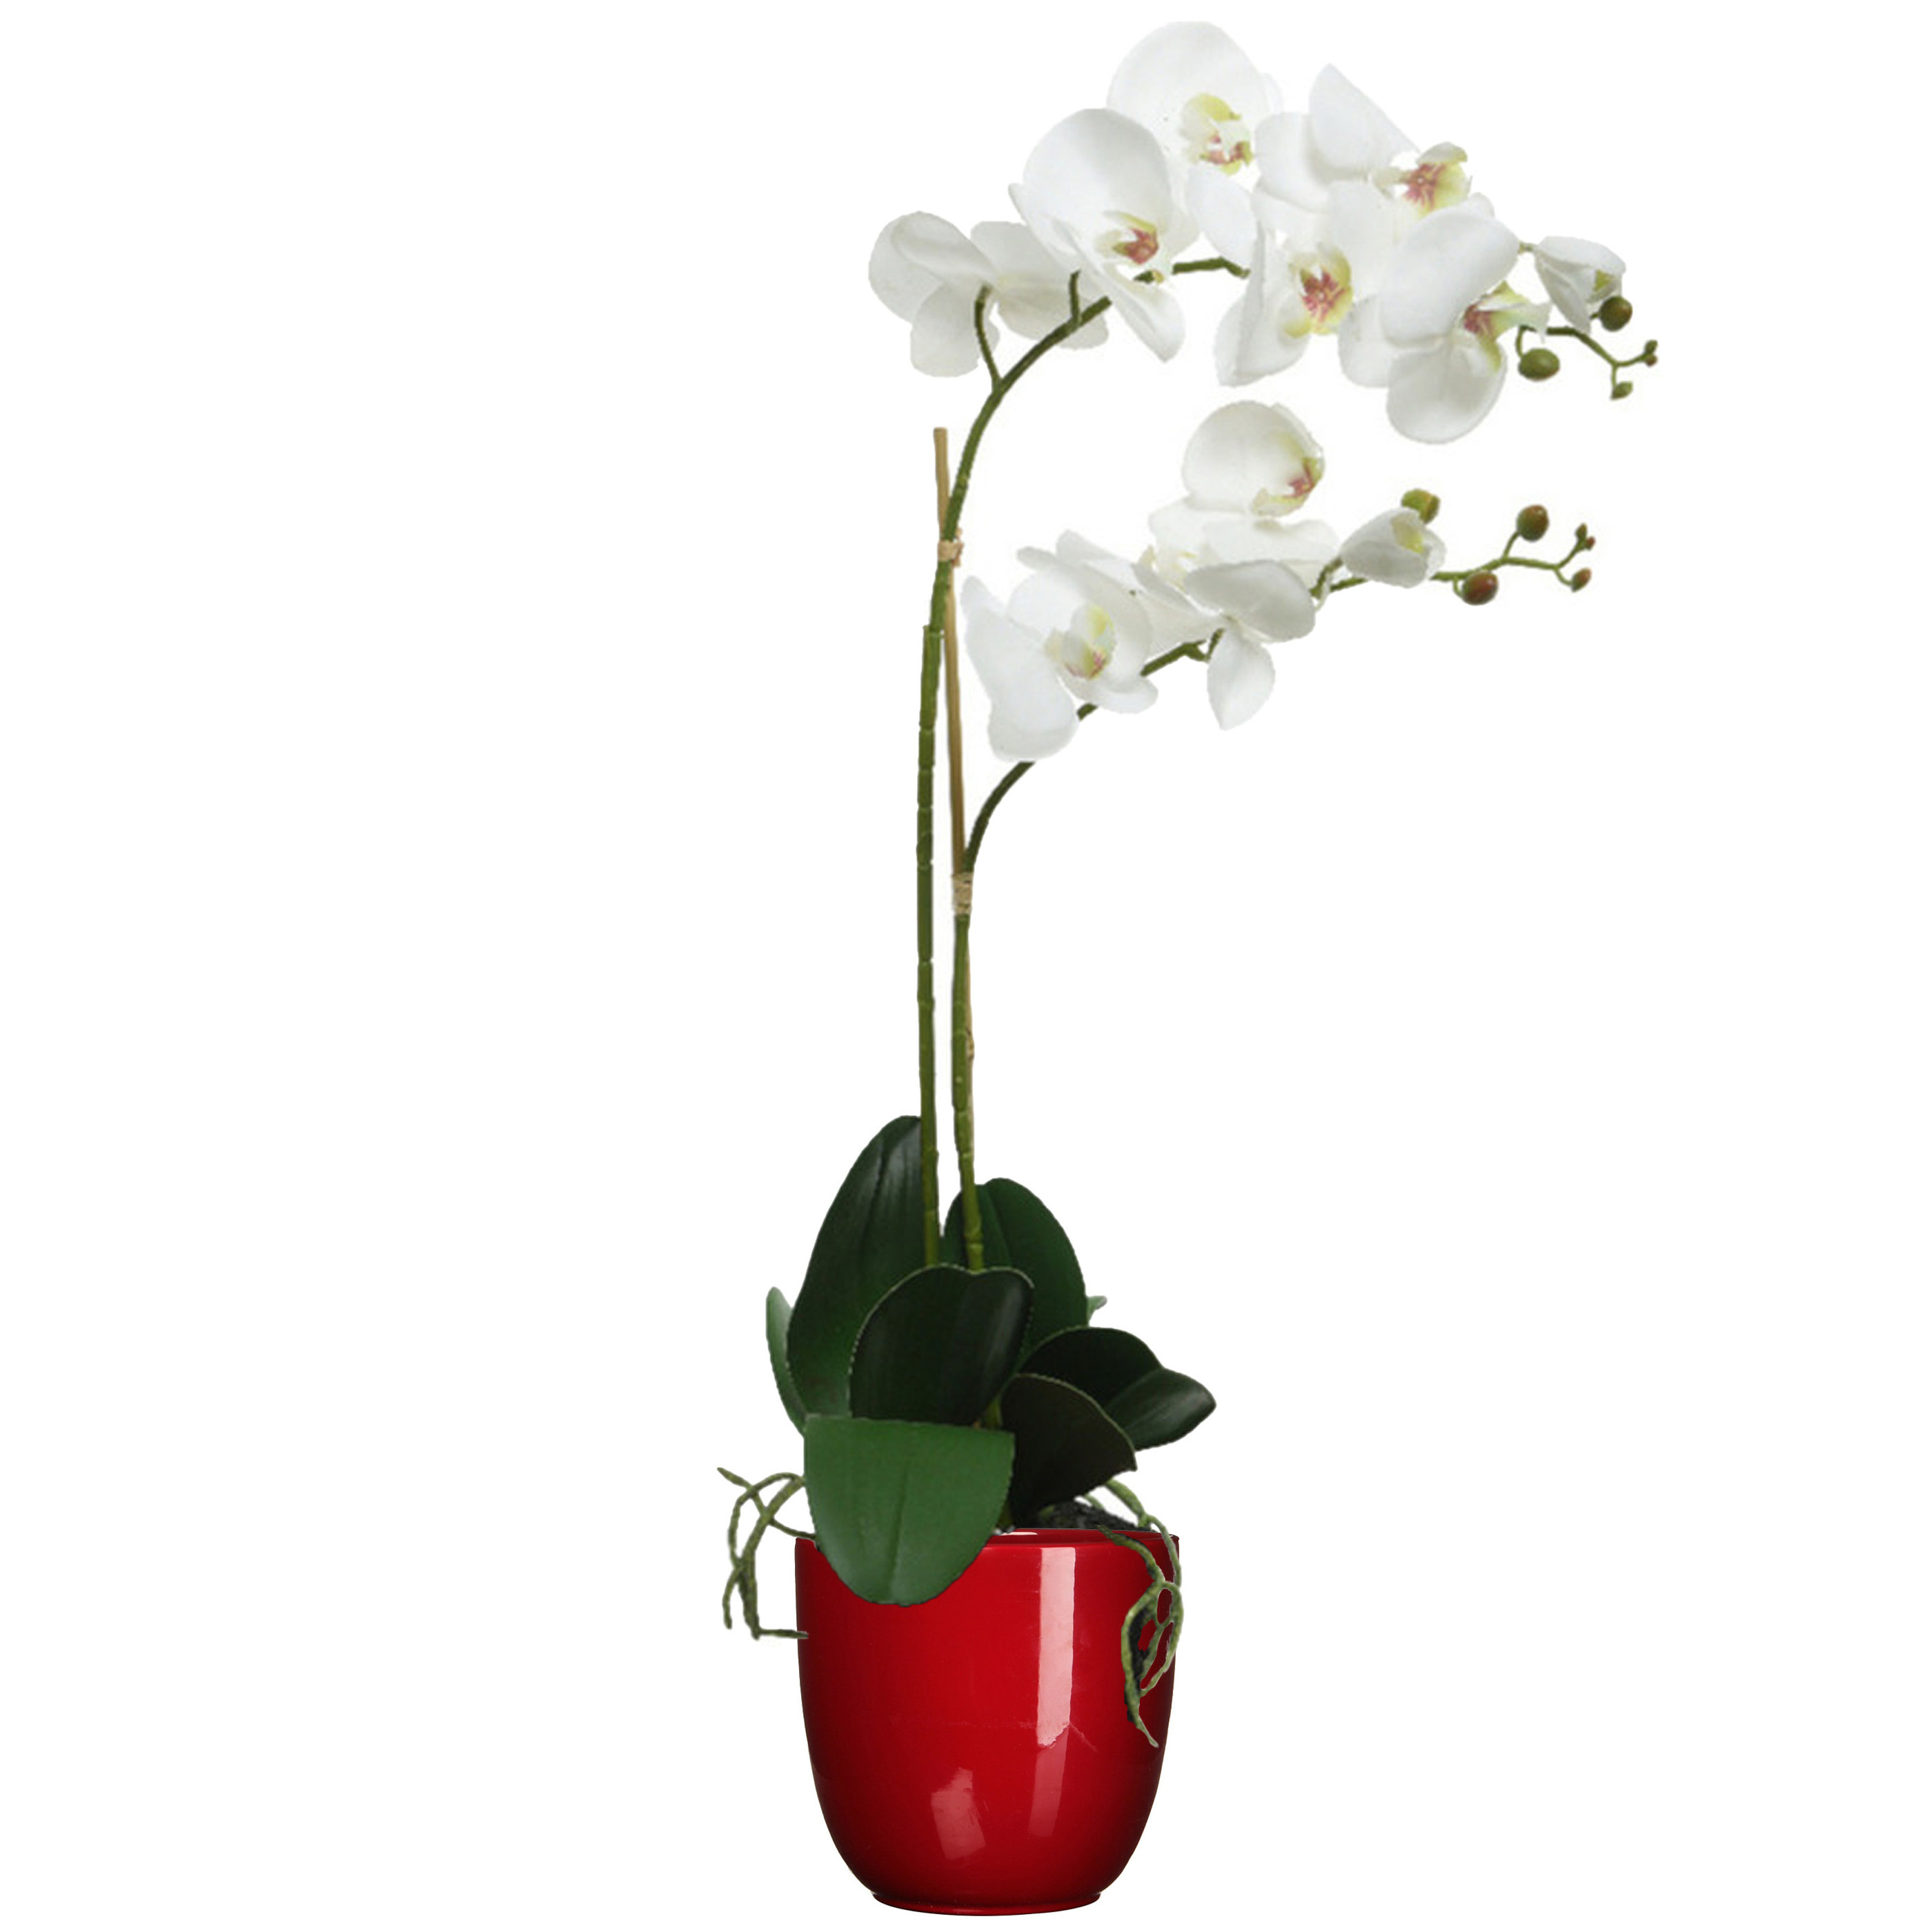 Orchidee kunstplant wit - 62 cm - inclusief bloempot donkerrood glans - Kunstbloemen in pot